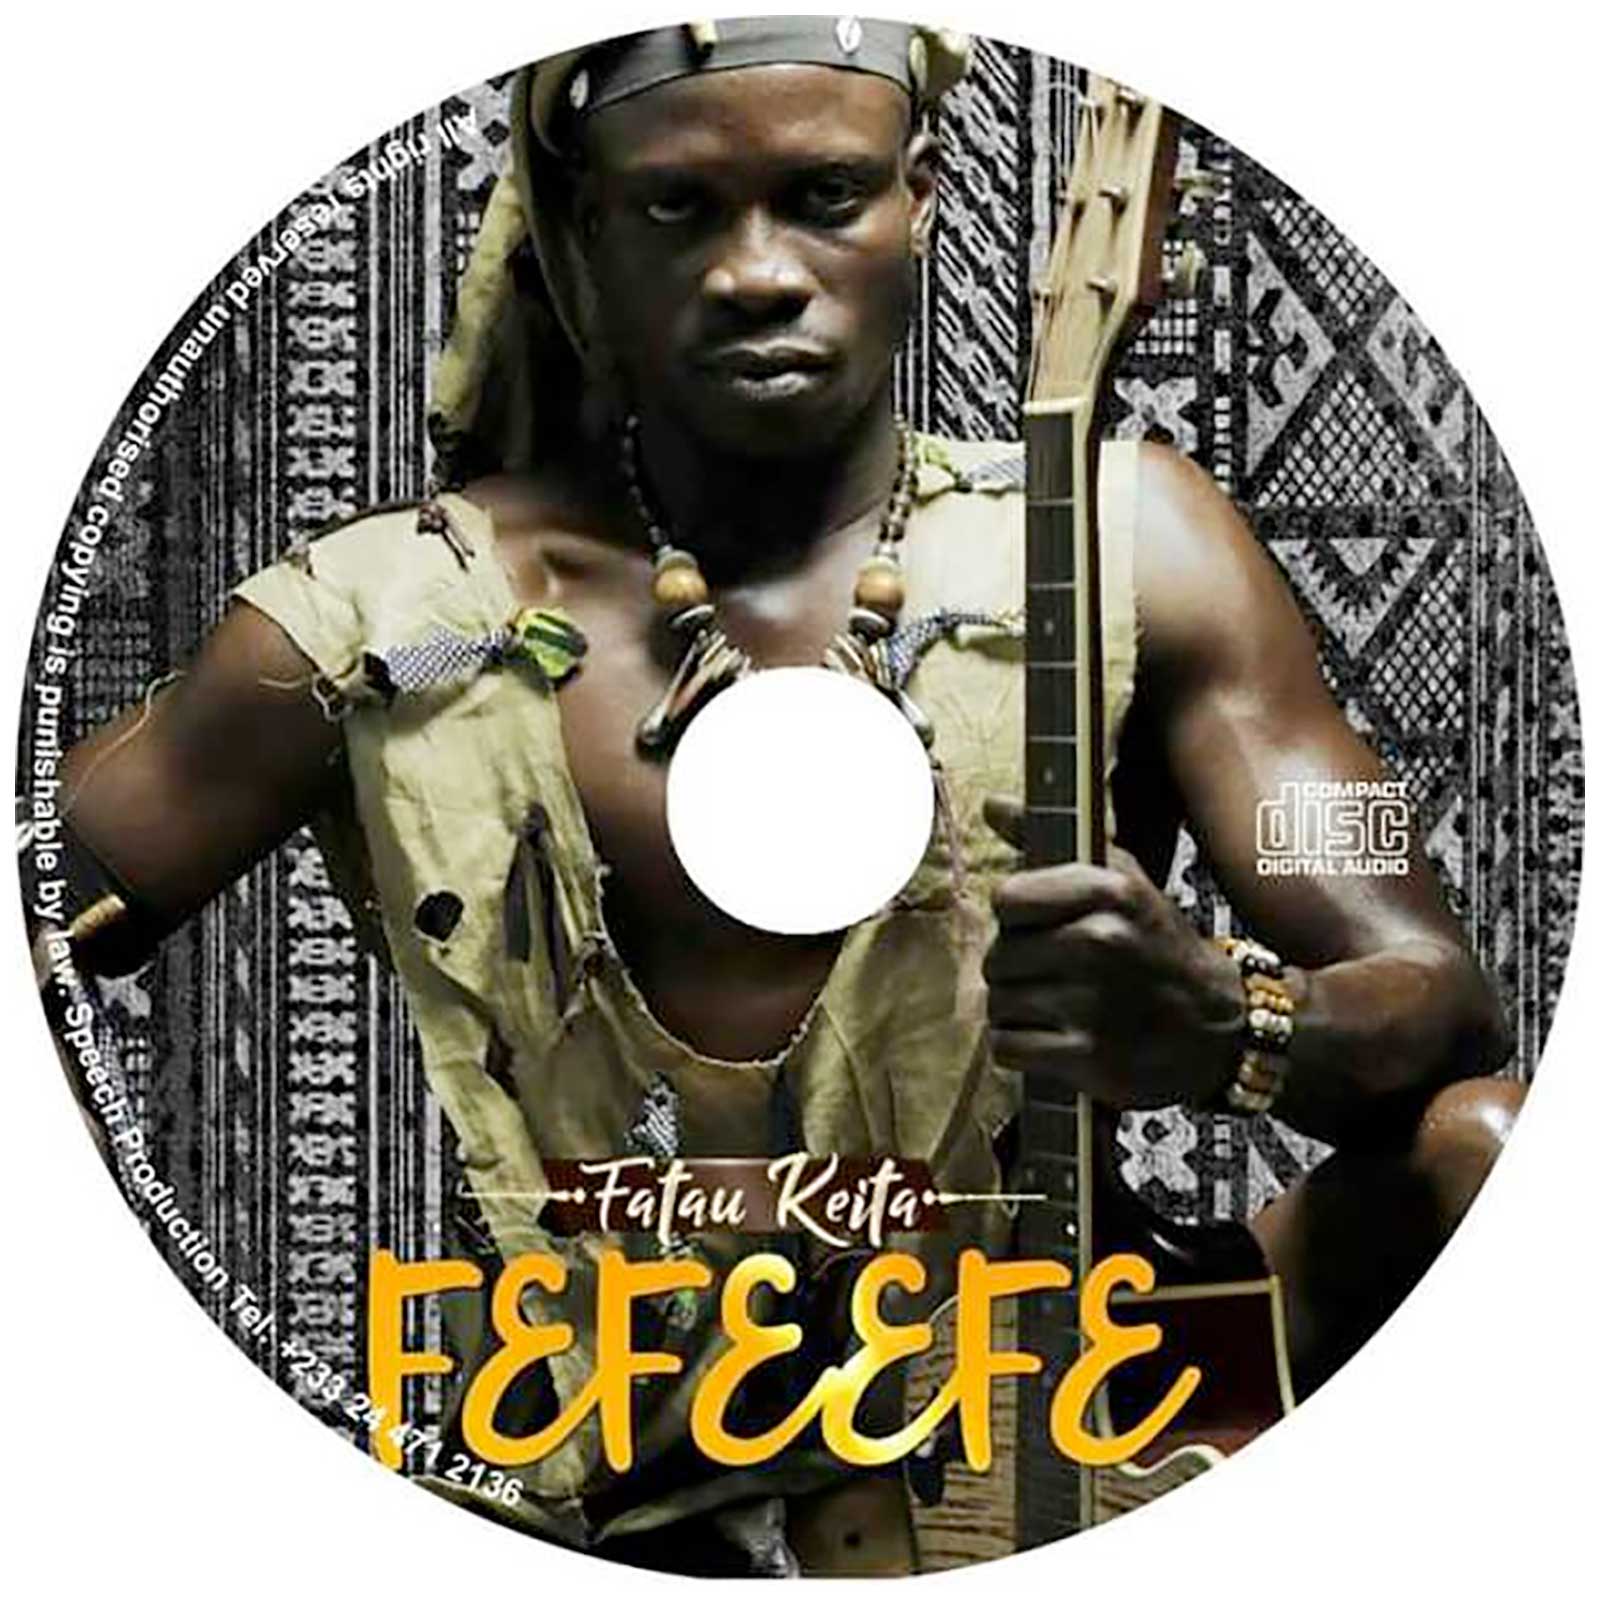 Fefeefe by Fatau Keita